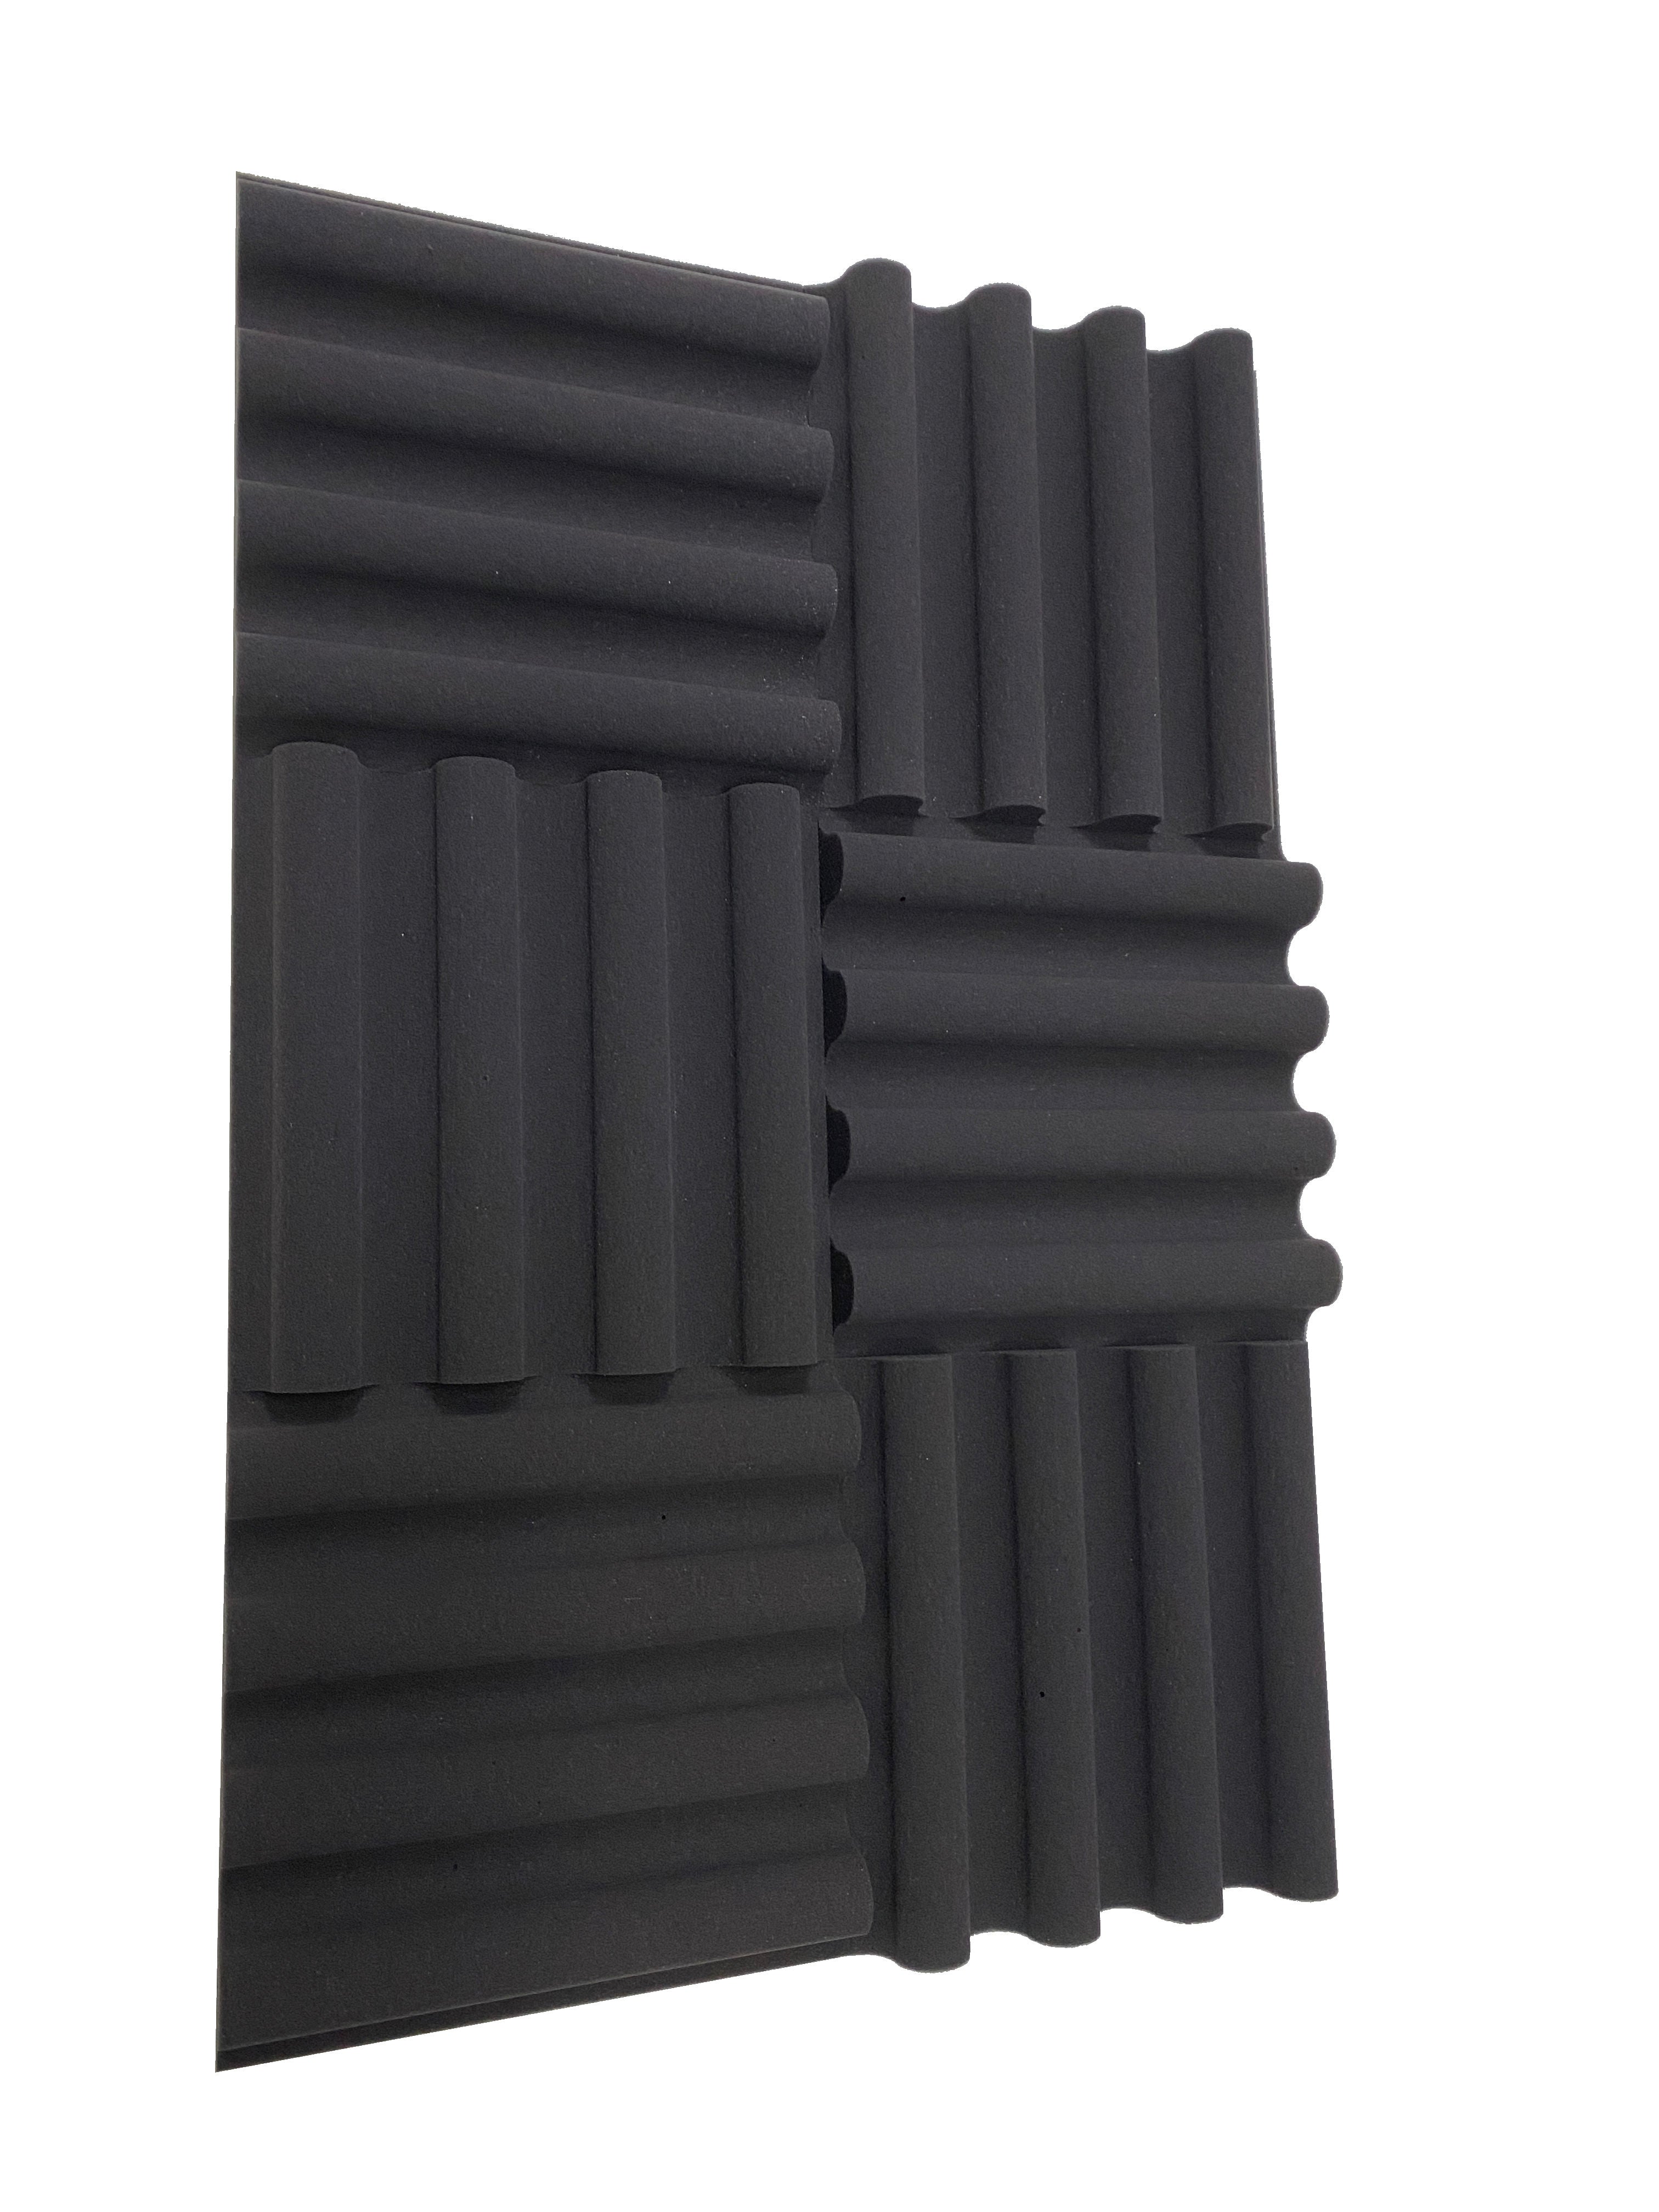 Mini Wave 12" Acoustic Studio Foam Tile Pack - 12 Tiles, 1.1qm Coverage